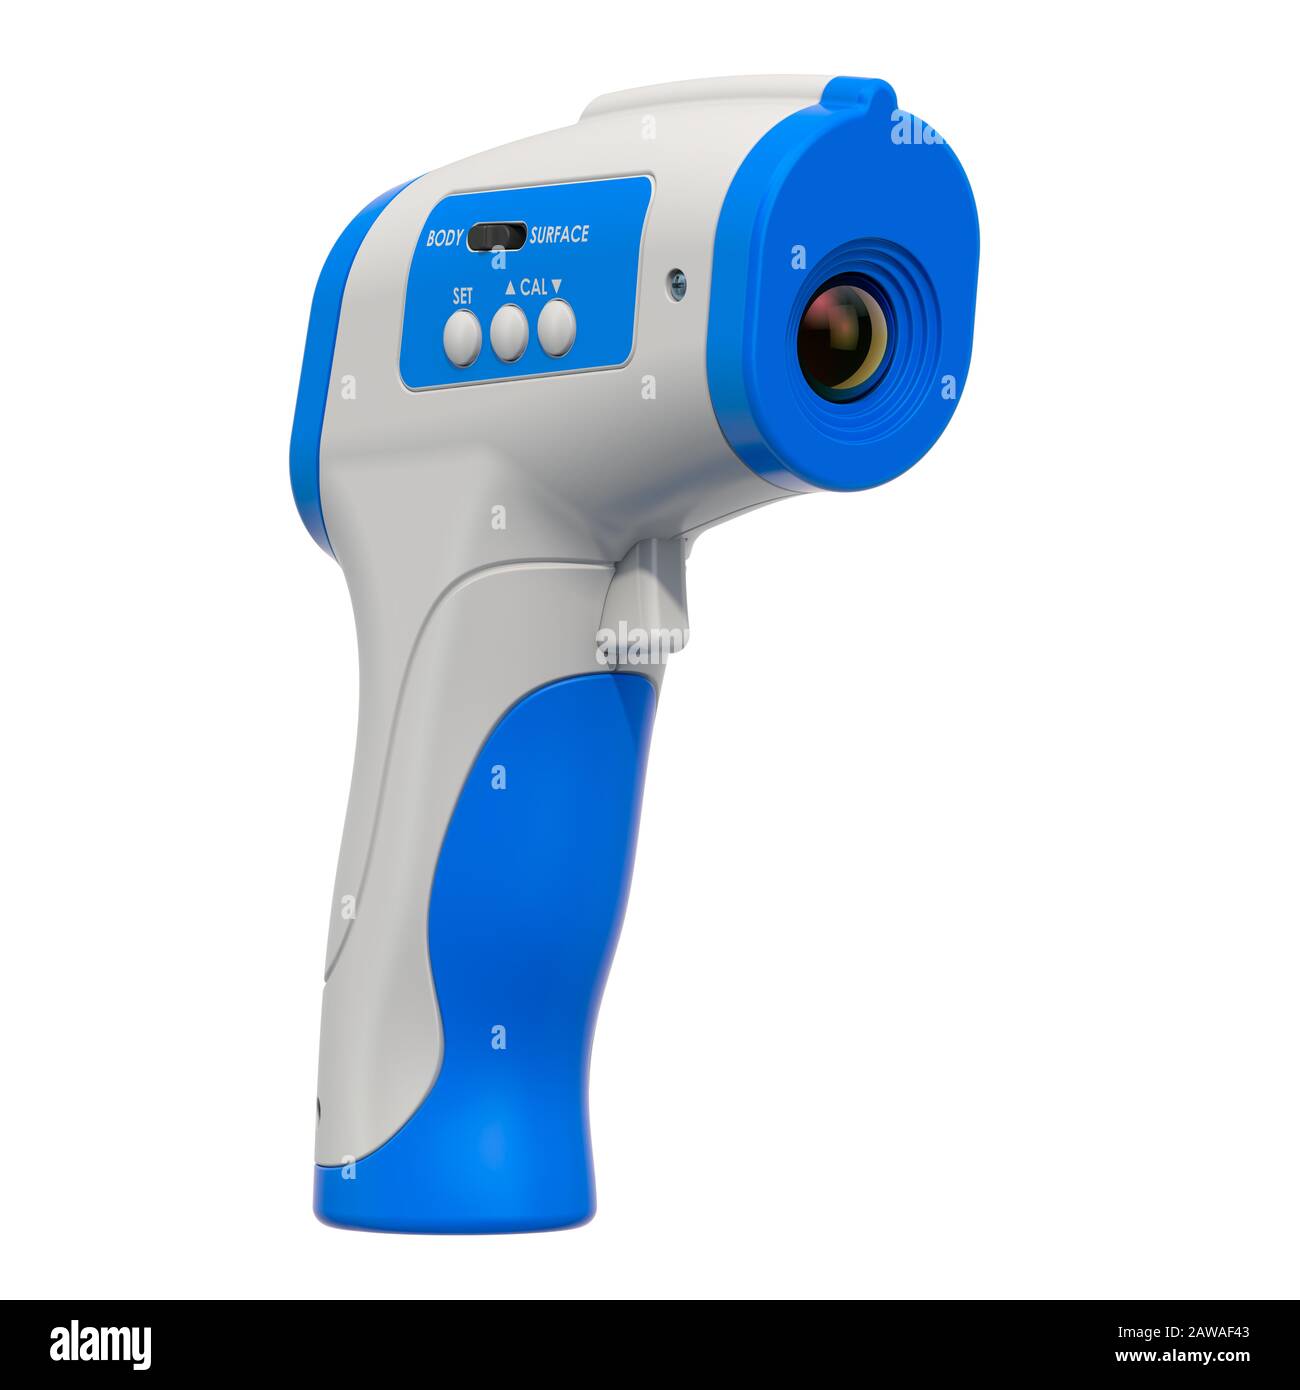 Termometro a infrarossi, digitale senza contatto. Rendering 3D isolato su sfondo bianco Foto Stock